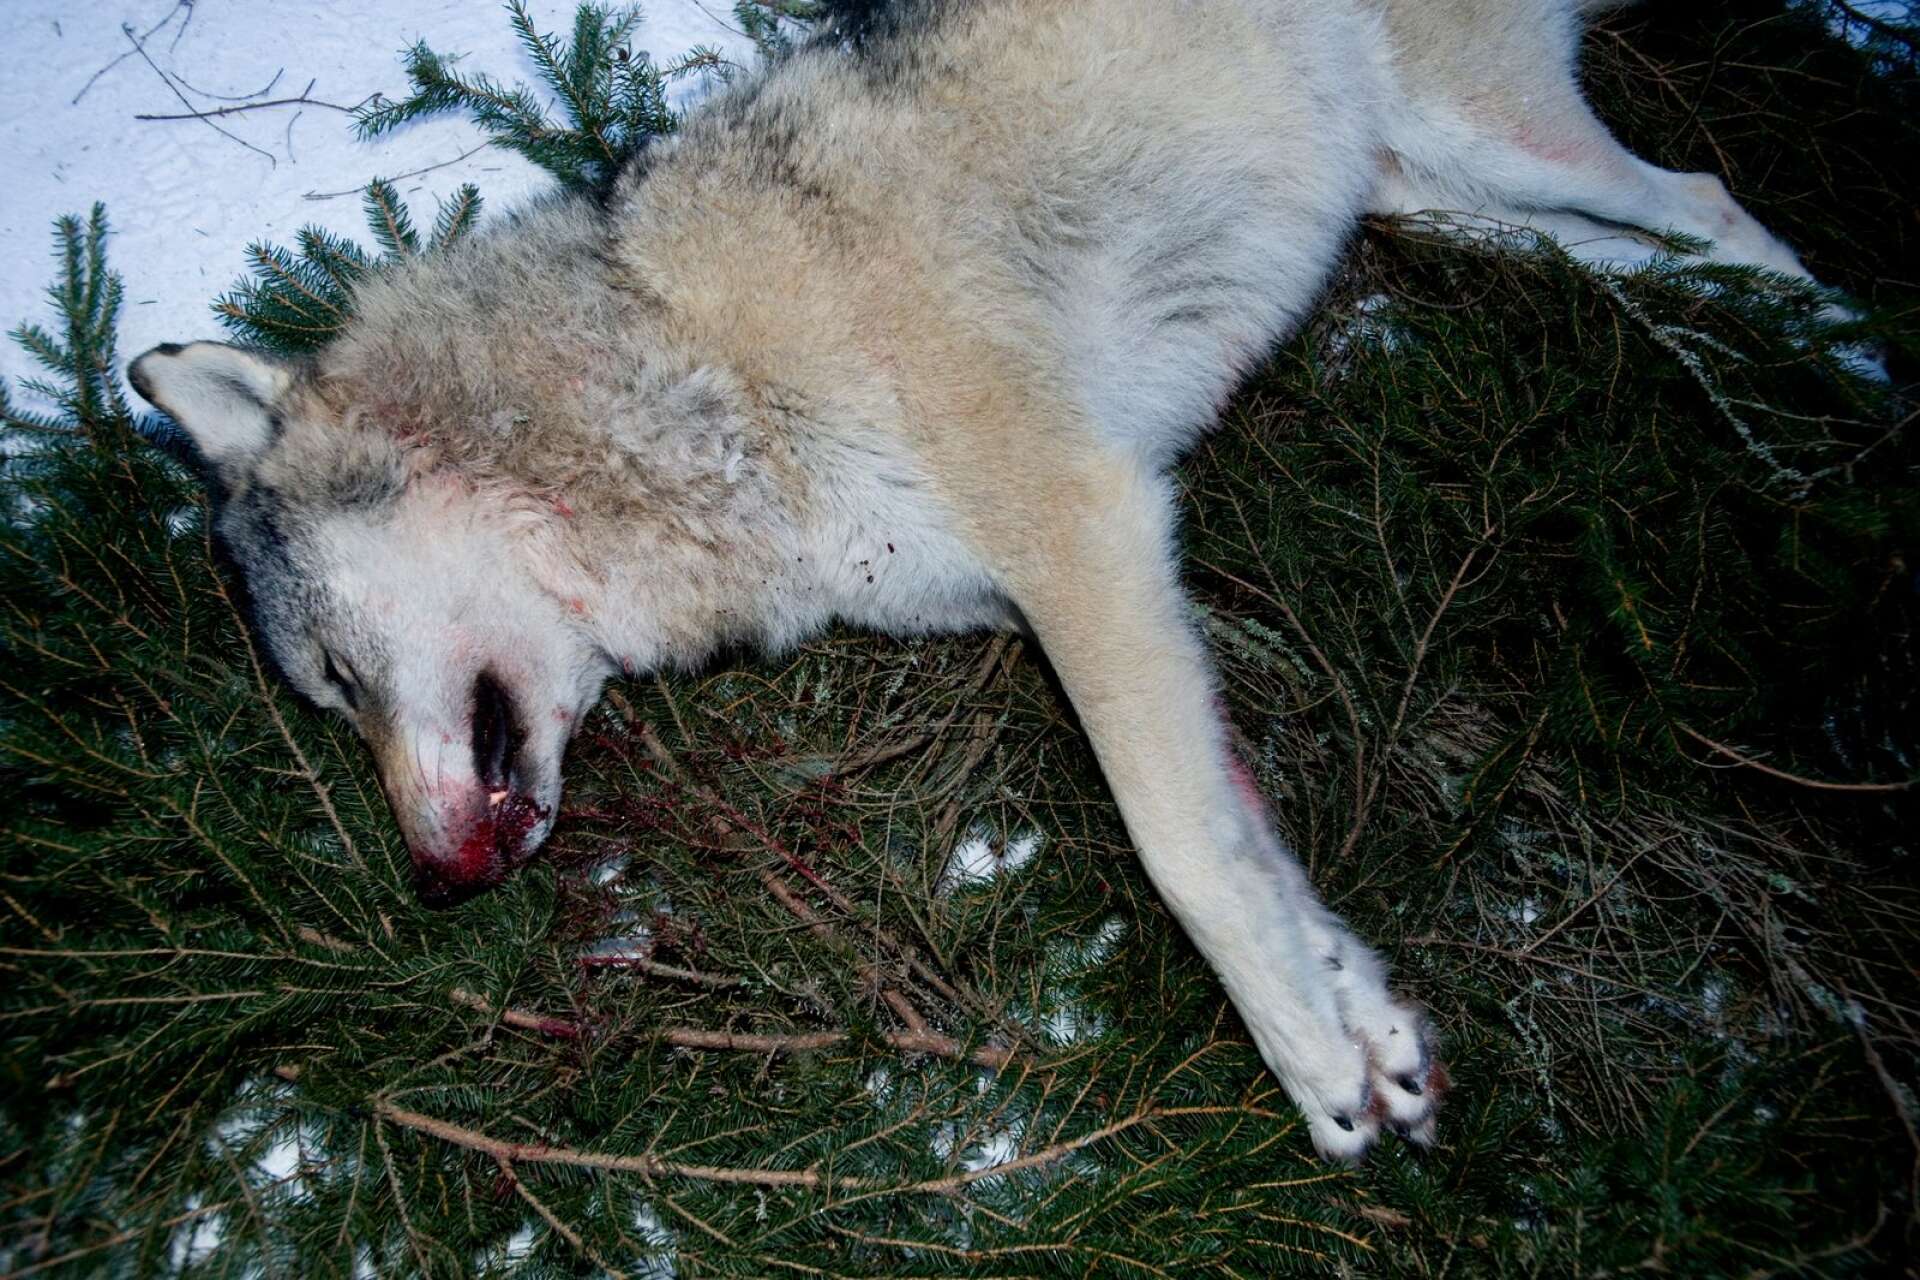 Enda skillnaden mellan denna jakthundsträning och tillståndsgiven jakt är den avslutande dödande kulan, skriver Ulf Stridsberg.